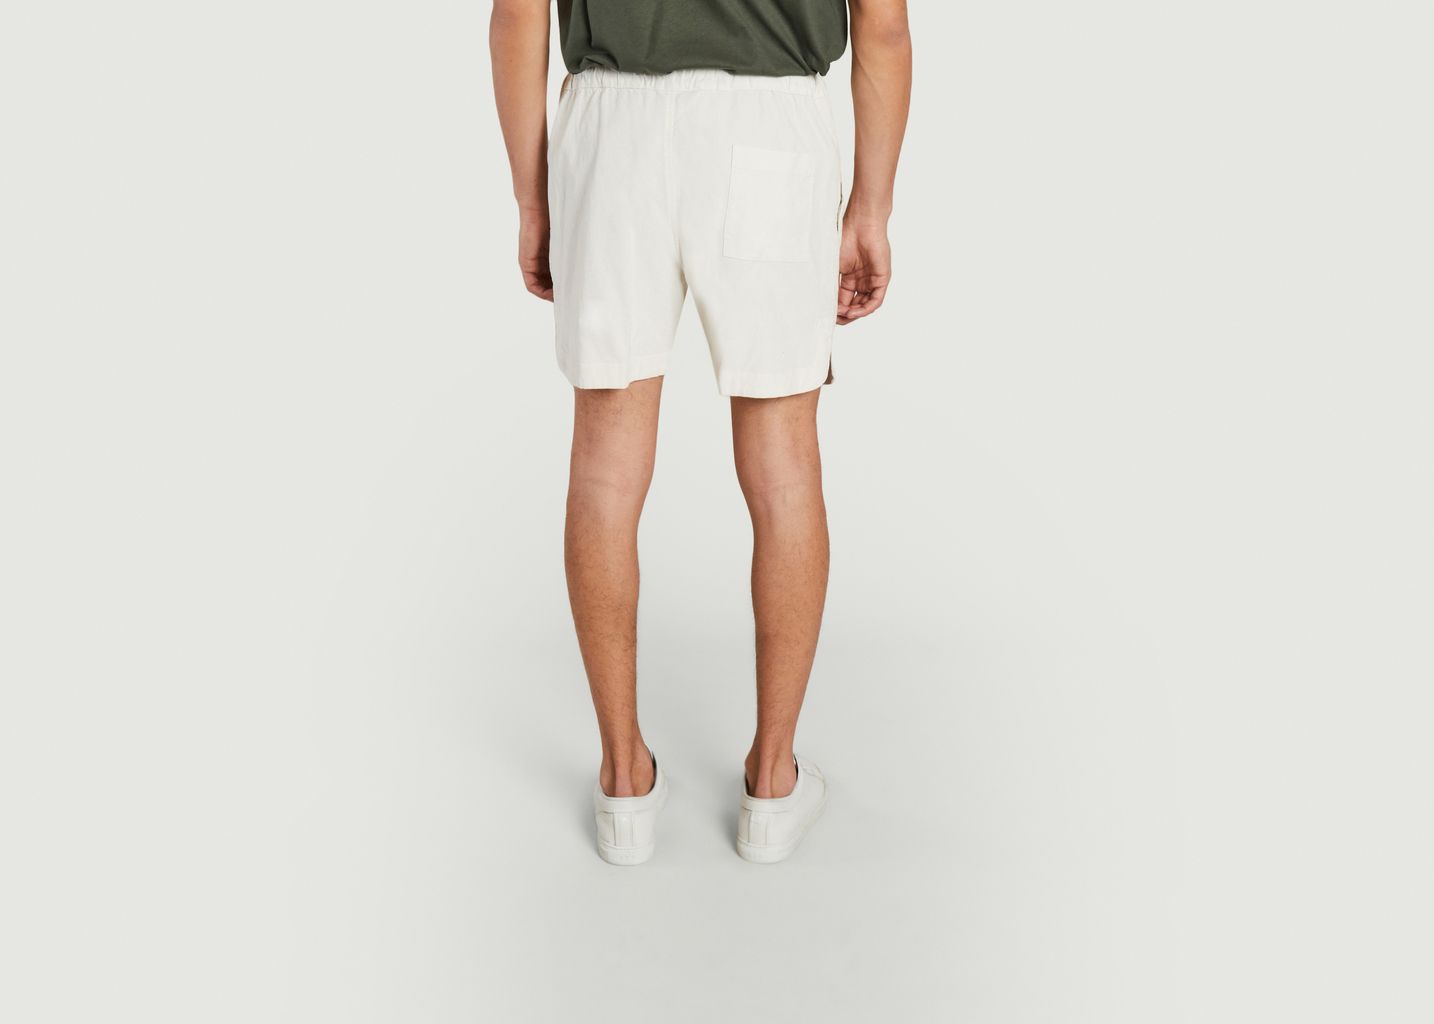 Running Man Corduroy Shorts - A.B.C.L. Garments